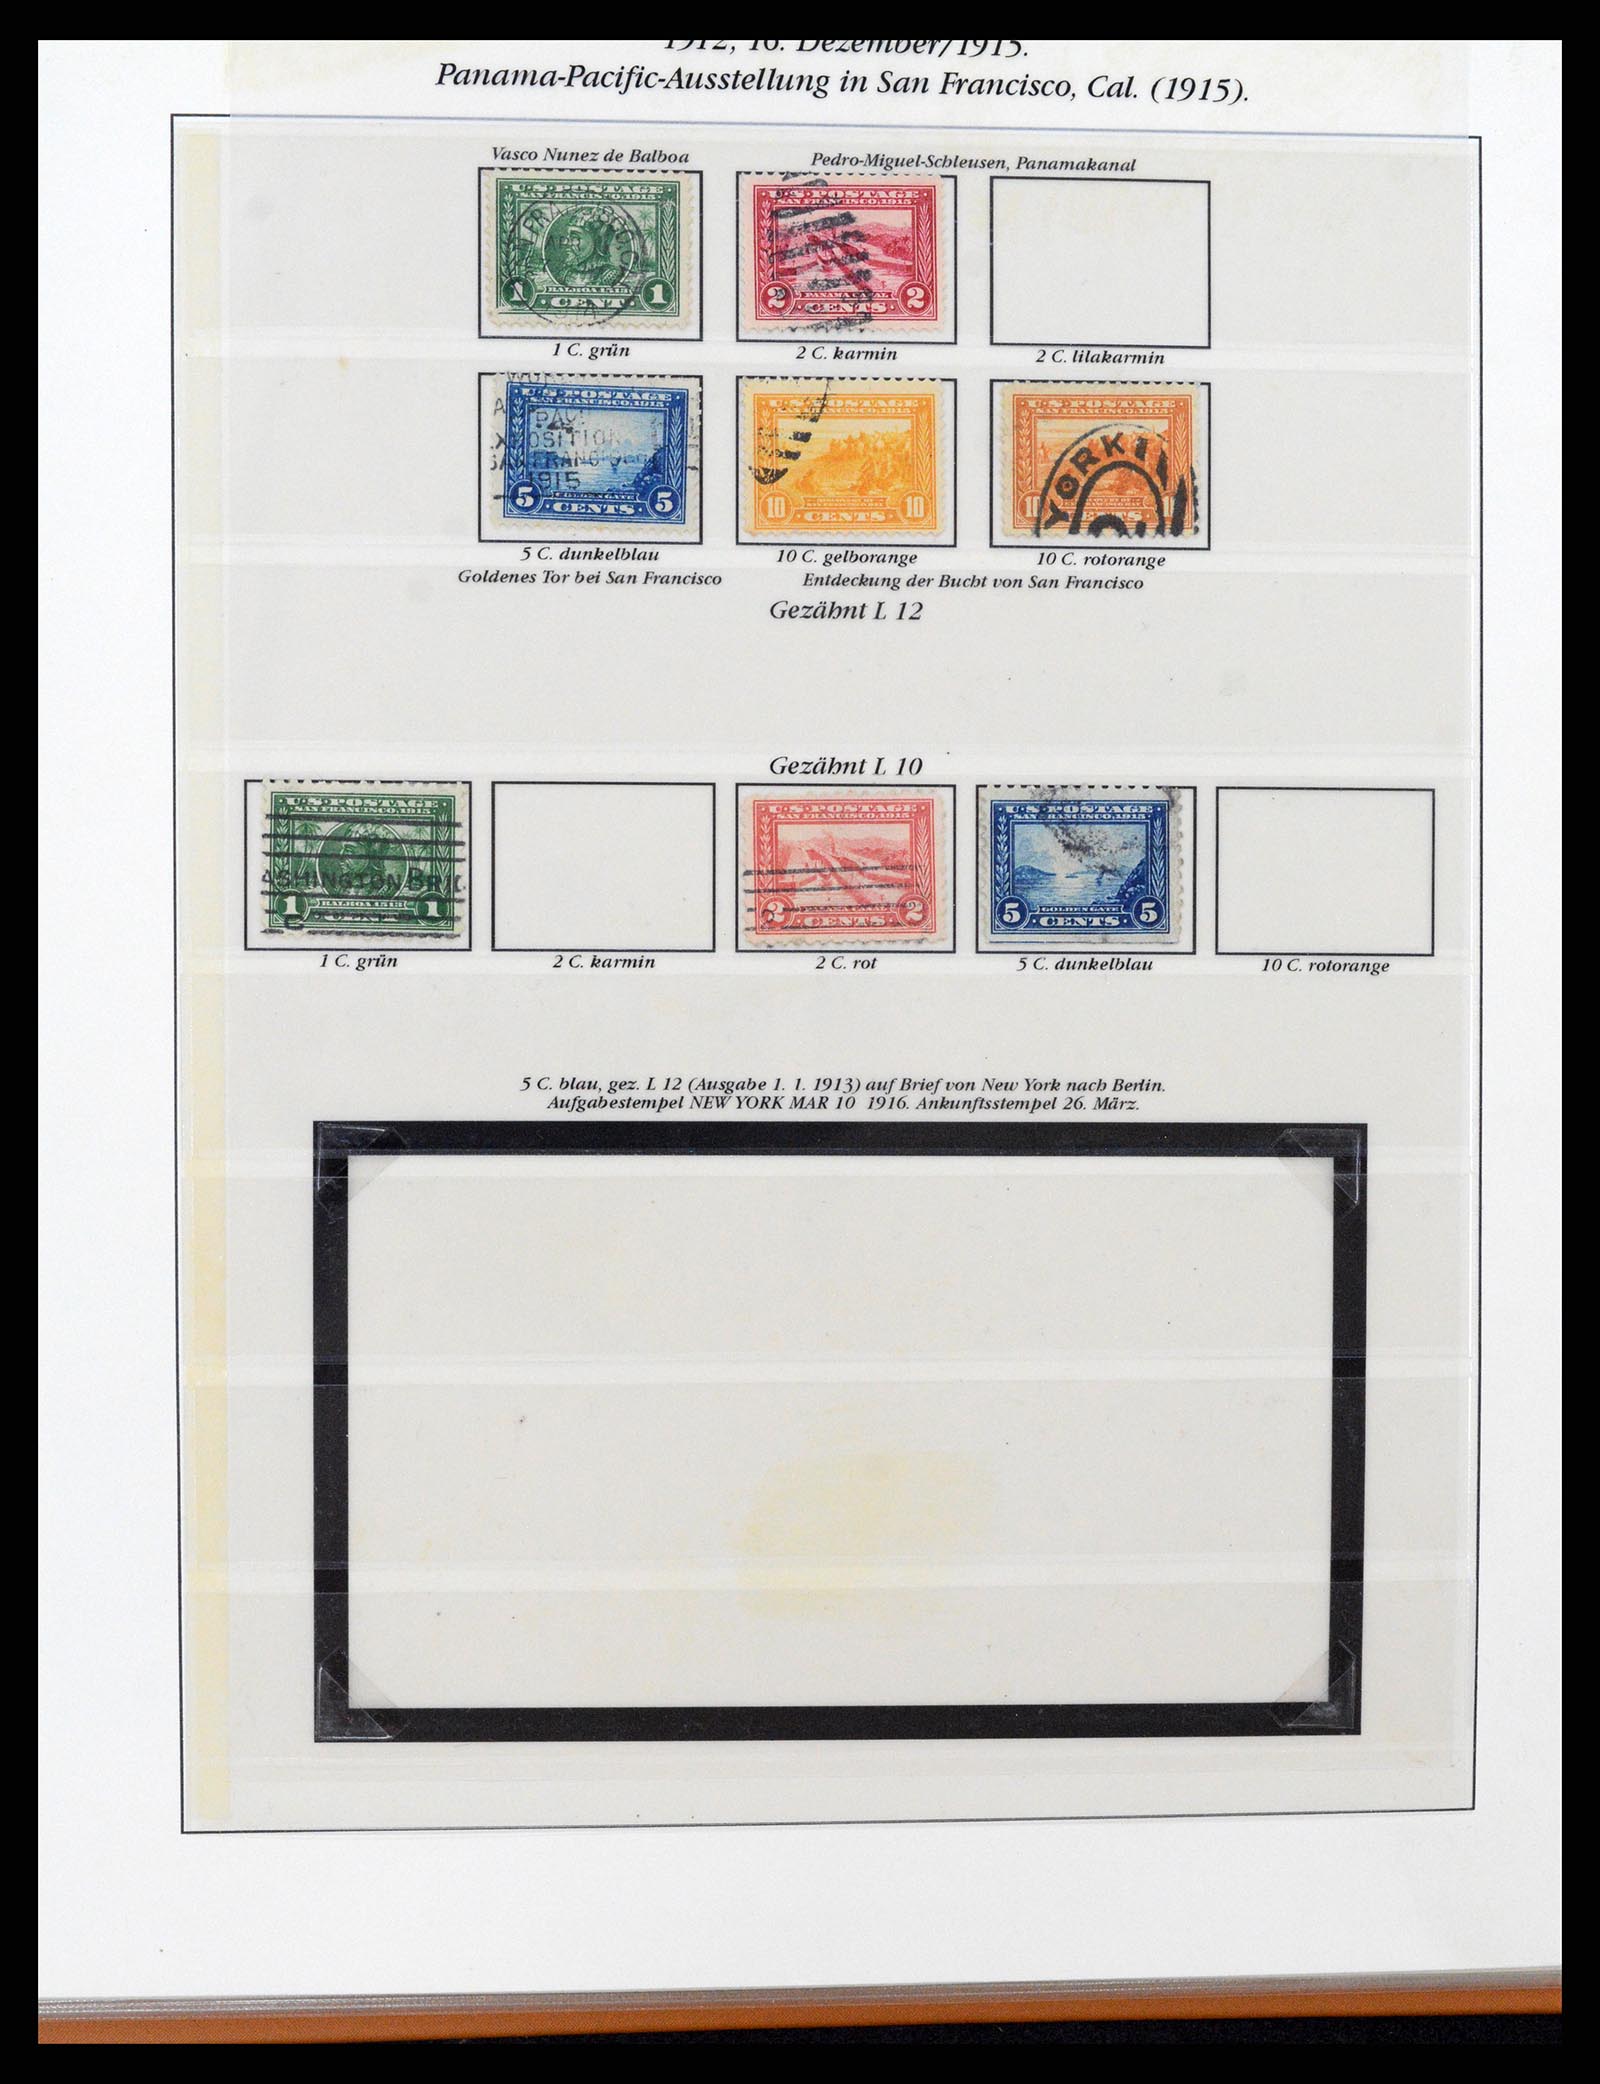 37653 048 - Stamp collection 37653 USA 1870-1954.